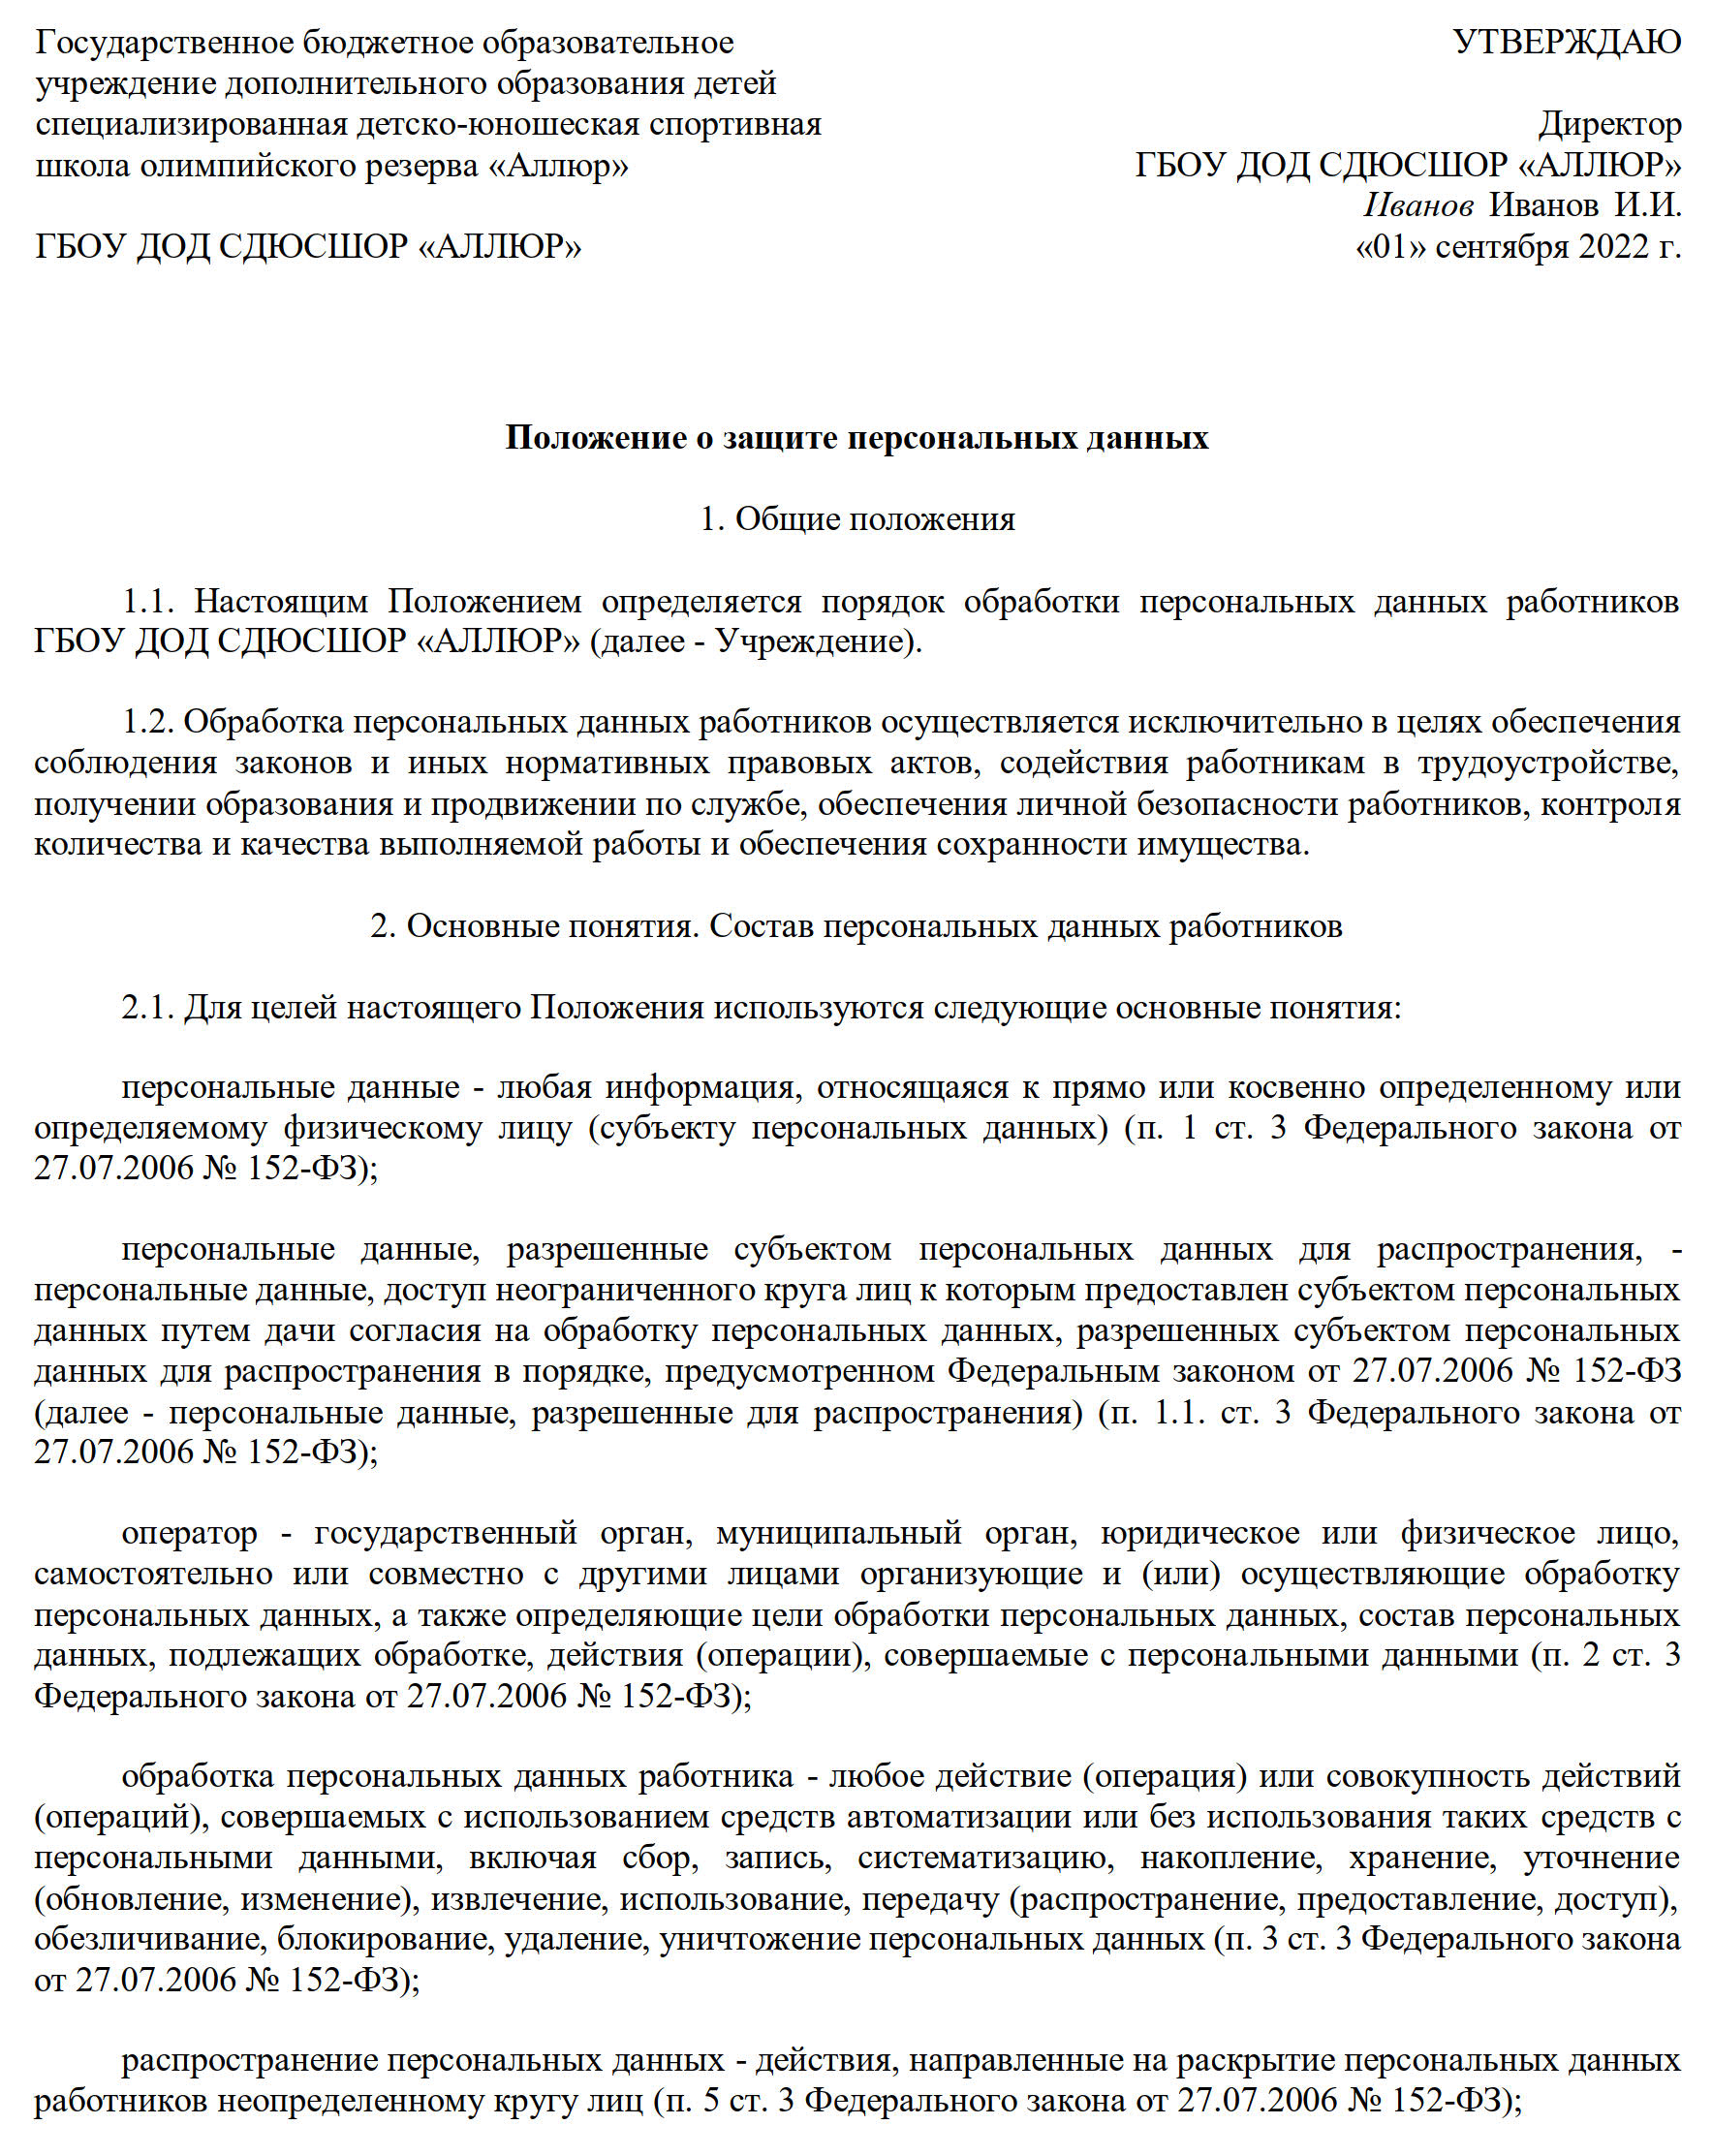 Образец заполнения положения о персональных данных со всеми изменениями в ТК РФ в 2022 году, стр. 1